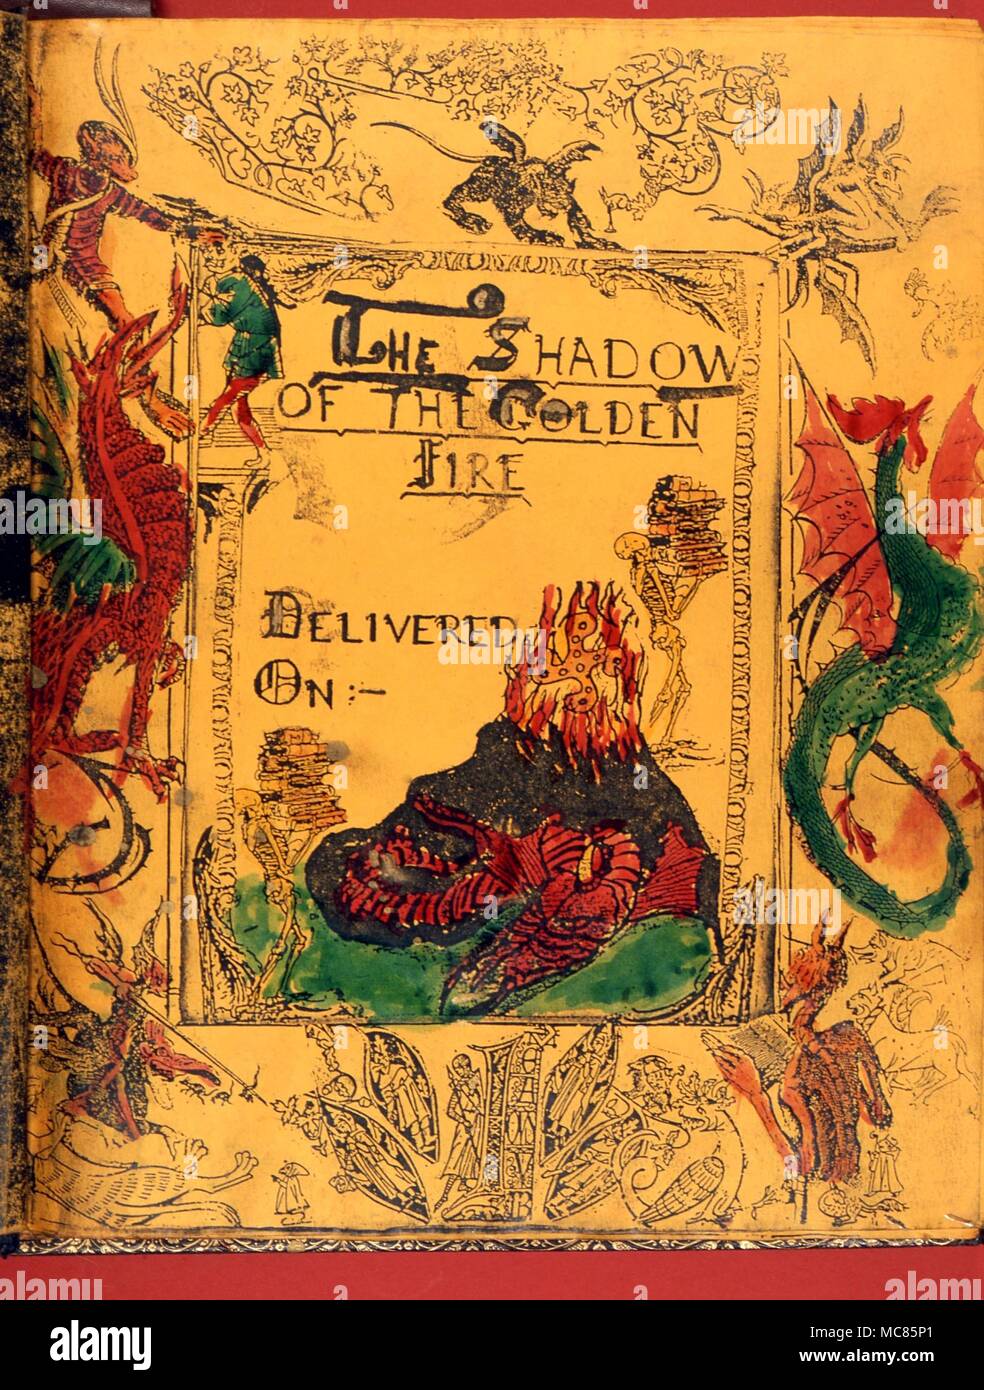 GRIMOIRE Hexerei Buch, oder grimoire, der aradia Typ, "Der Schatten der Goldenen Blume', durch ein wiccan Mitglied vorbereitet, und fertigen ca. 1950 Stockfoto